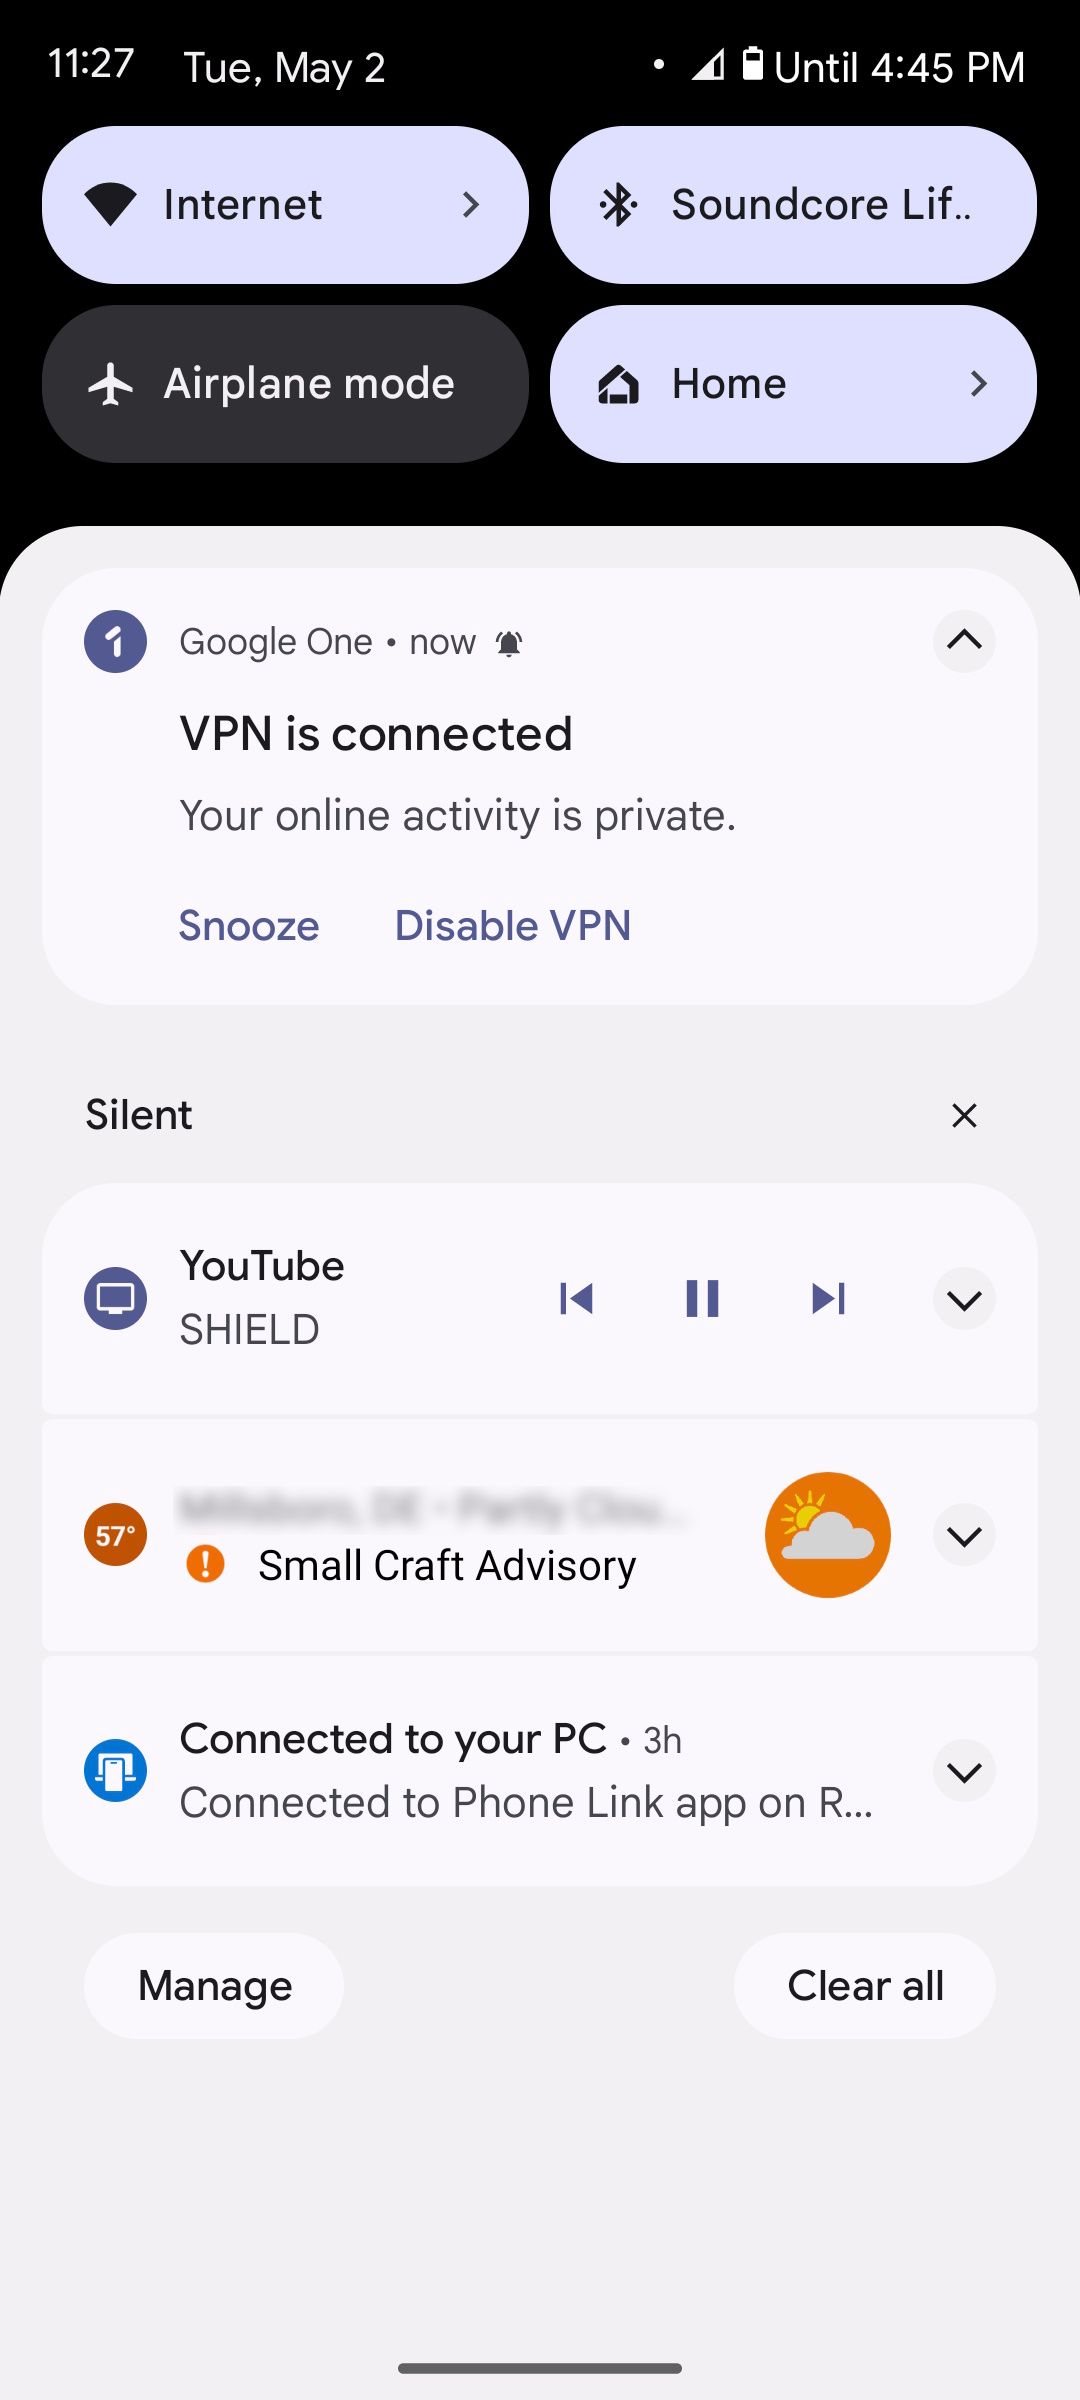 اتصال با موفقیت به VPN توسط Google One